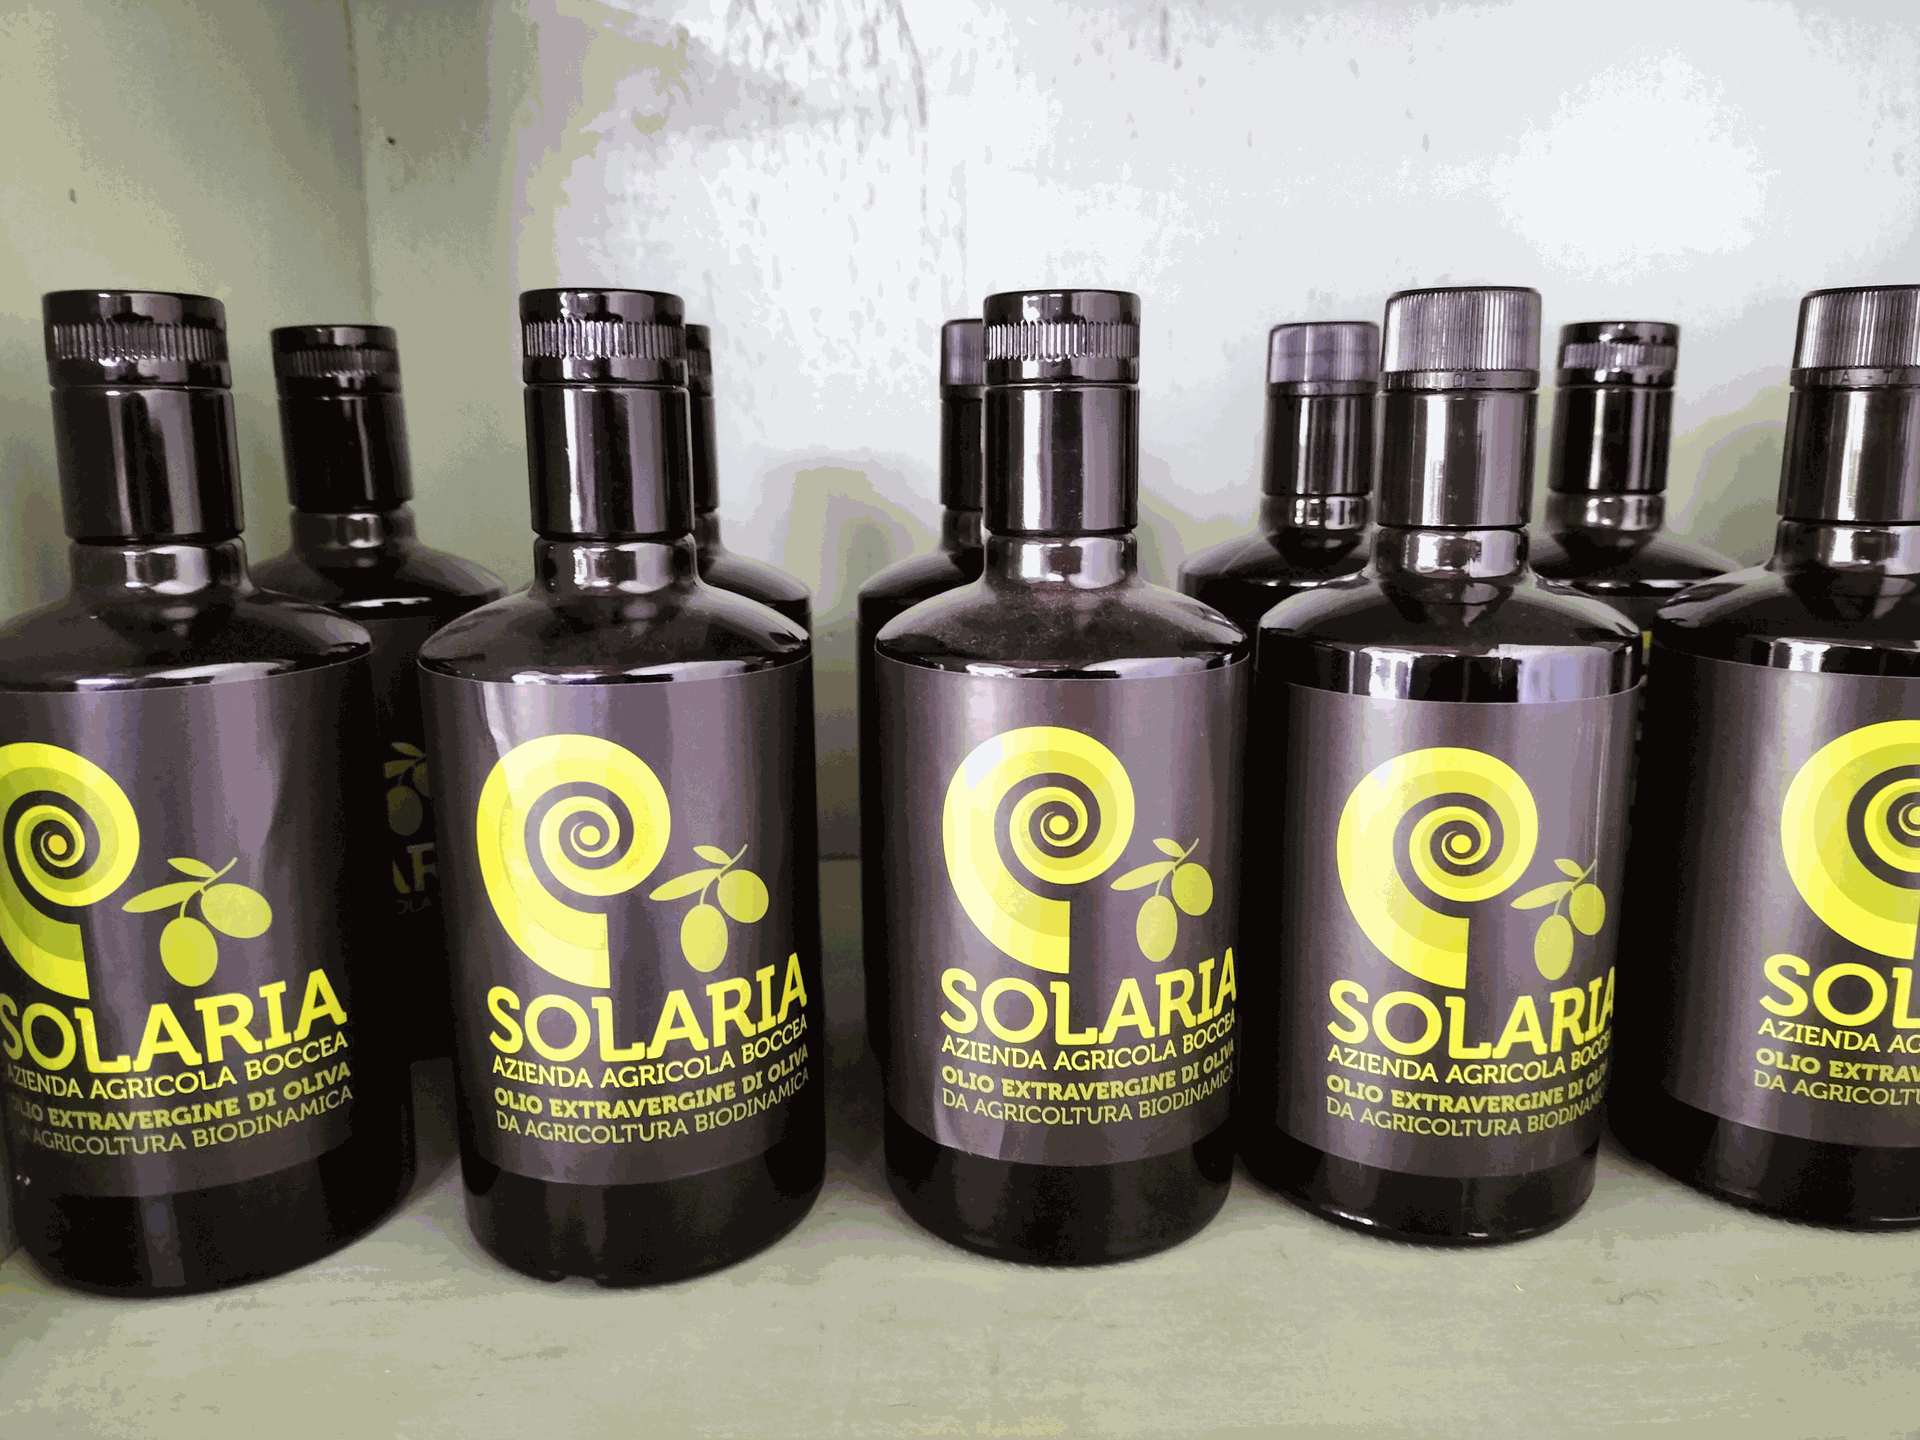 Olio extra vergine di oliva Solaria Azienda Agricola Boccea